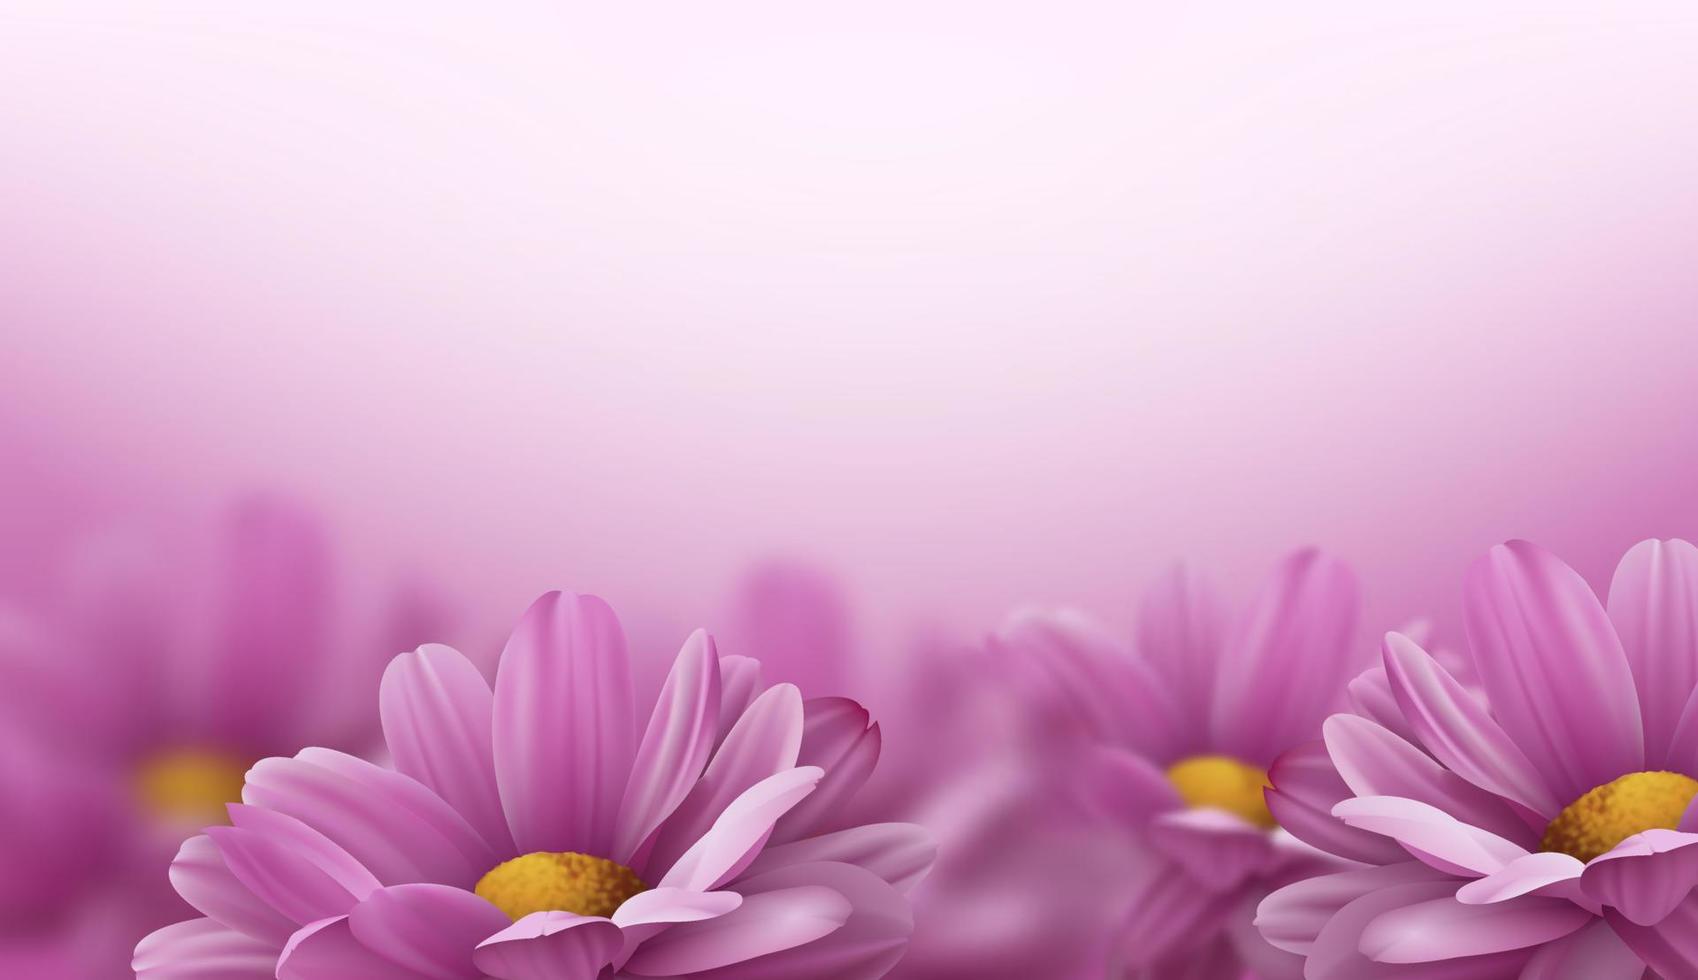 realistische roze 3d chrysant bloemen op witte achtergrond. vector illustratie